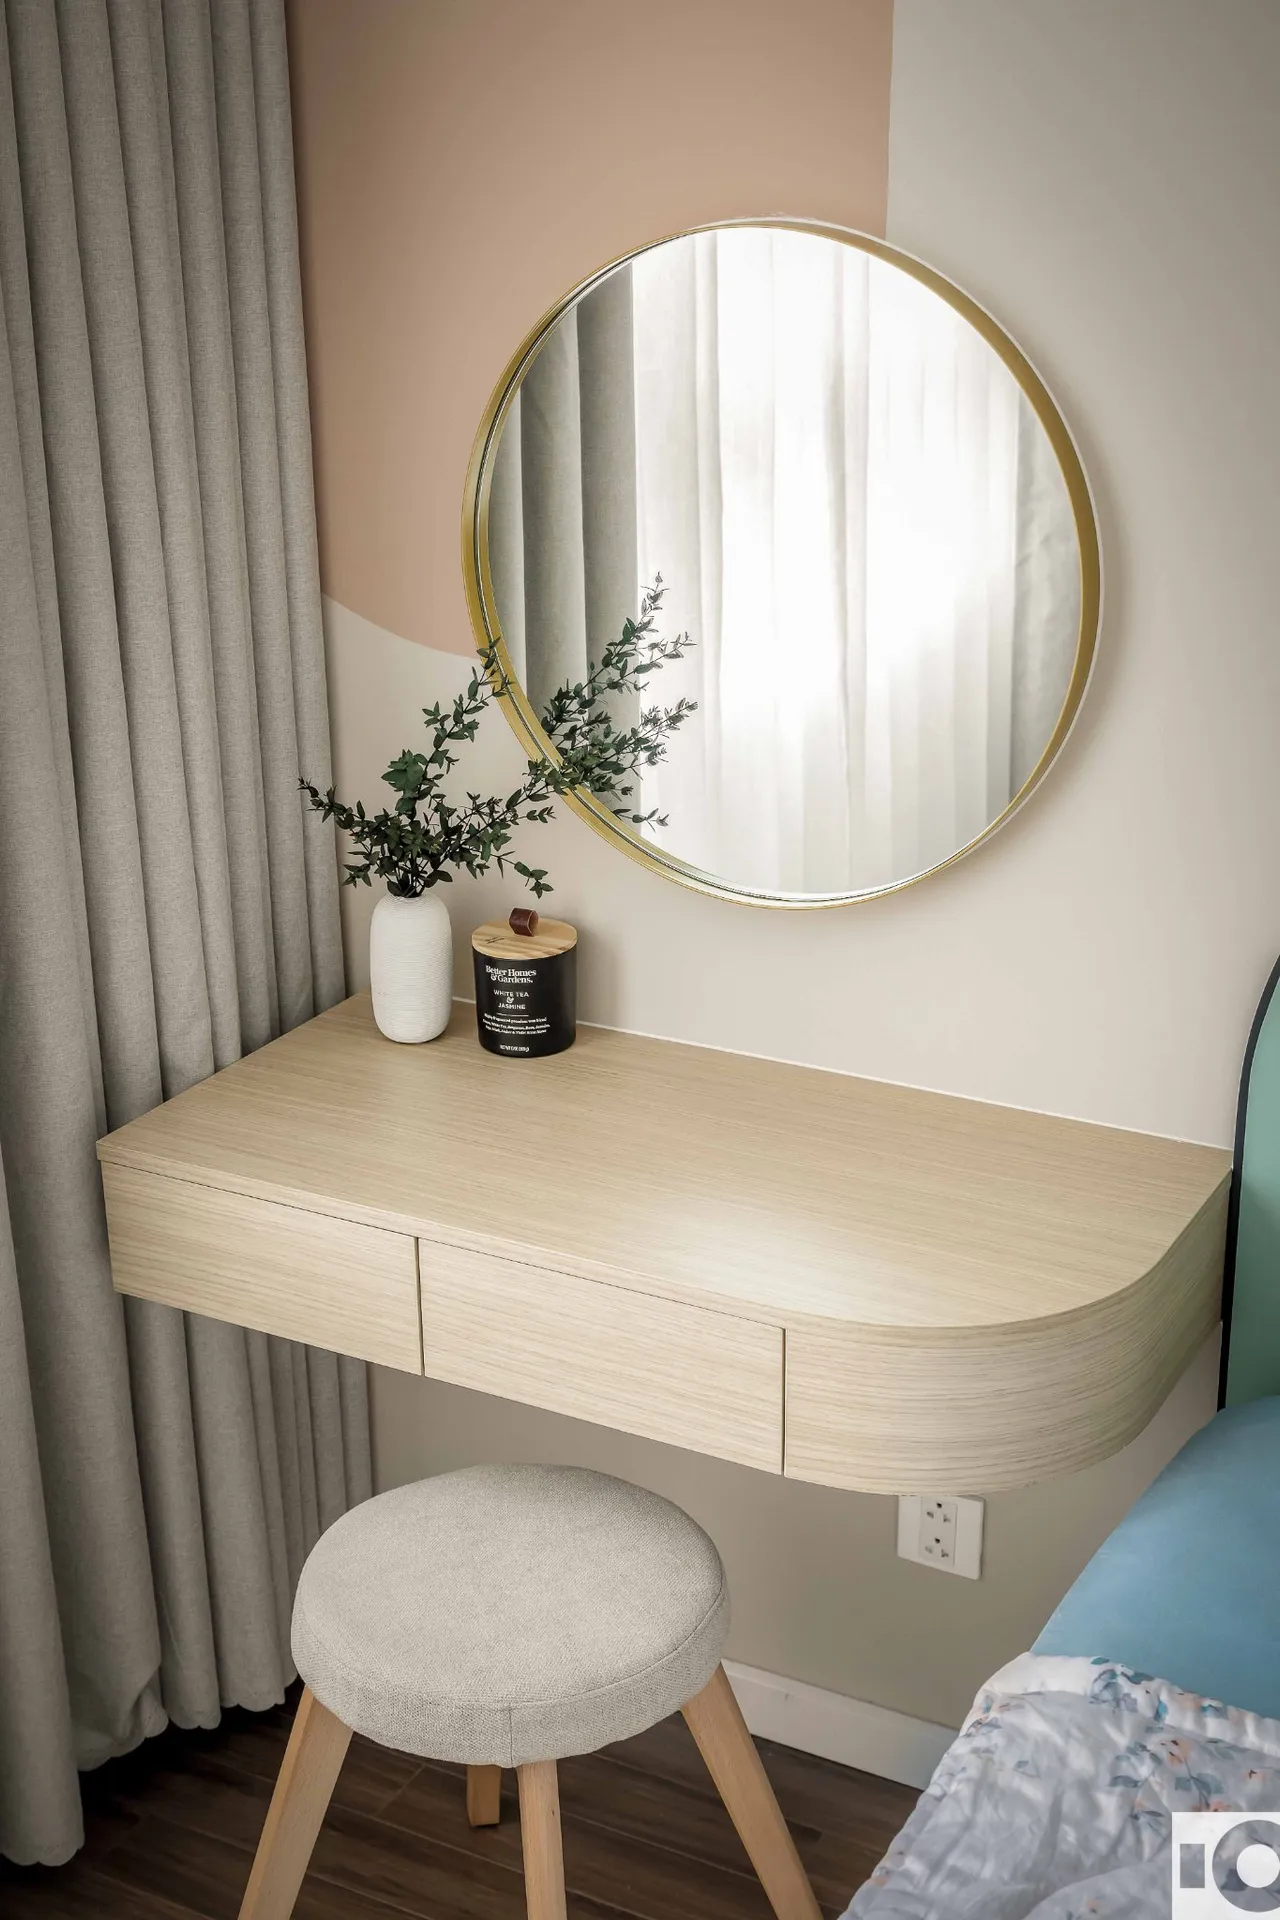 Hoàn thiện nội thất phòng ngủ master Căn hộ The Riviera Point Quận 7 phong cách Tối giản Minimalist, phong cách Color Block